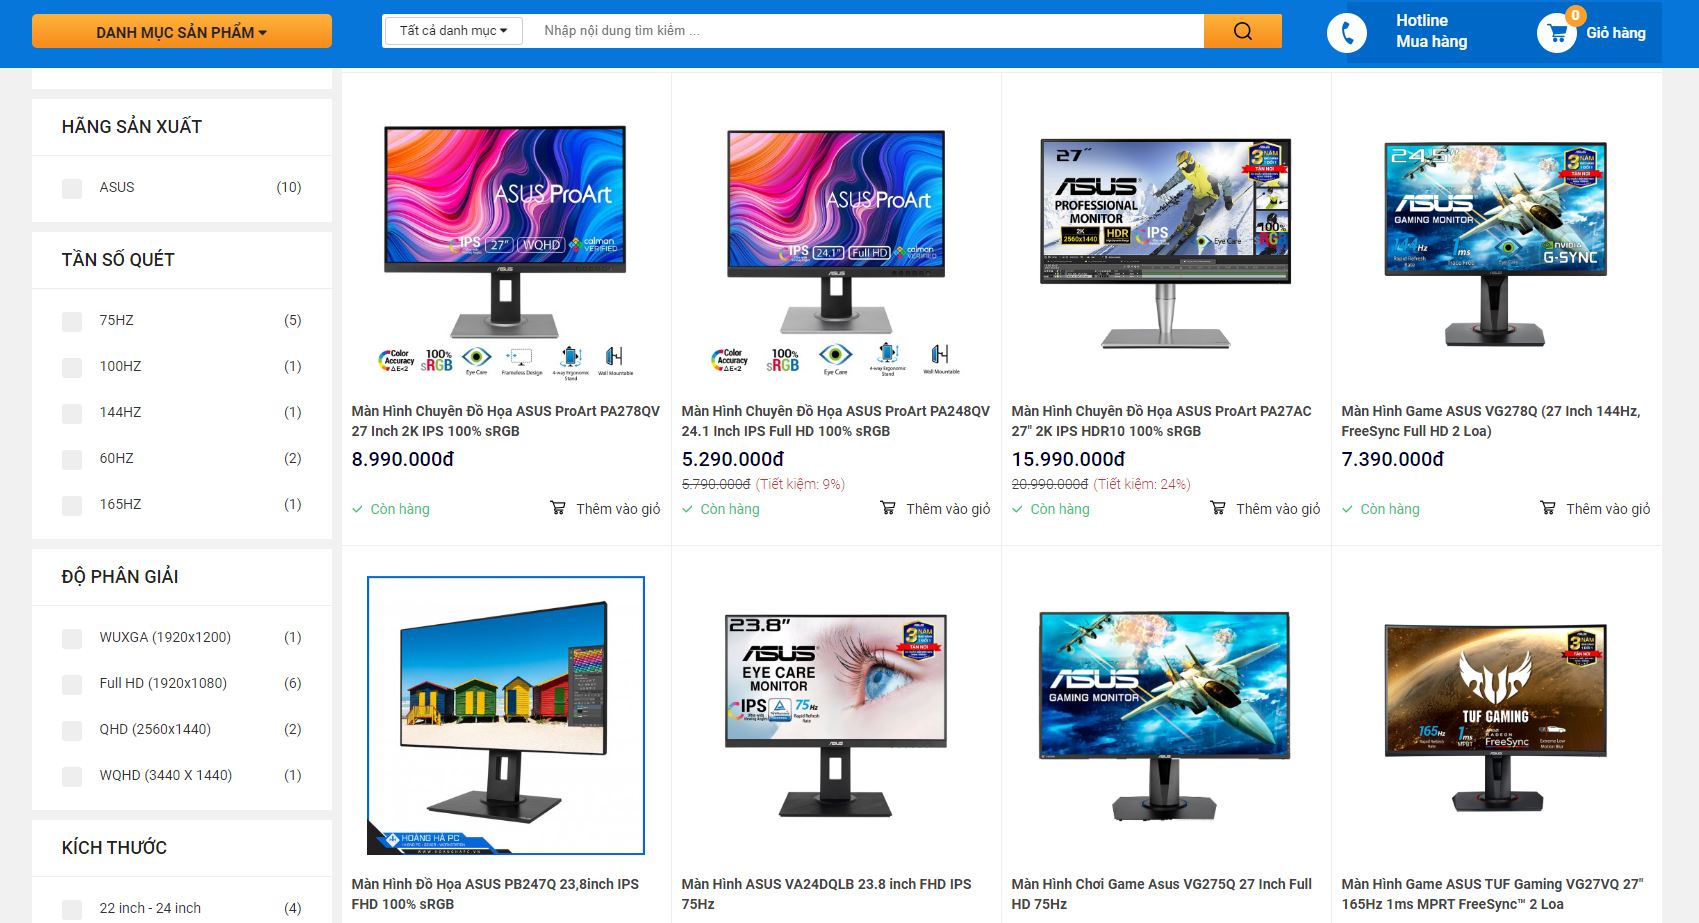 Hoàng Hà PC - Địa chỉ cung cấp màn hình máy tính Asus chính hãng, giá rẻ